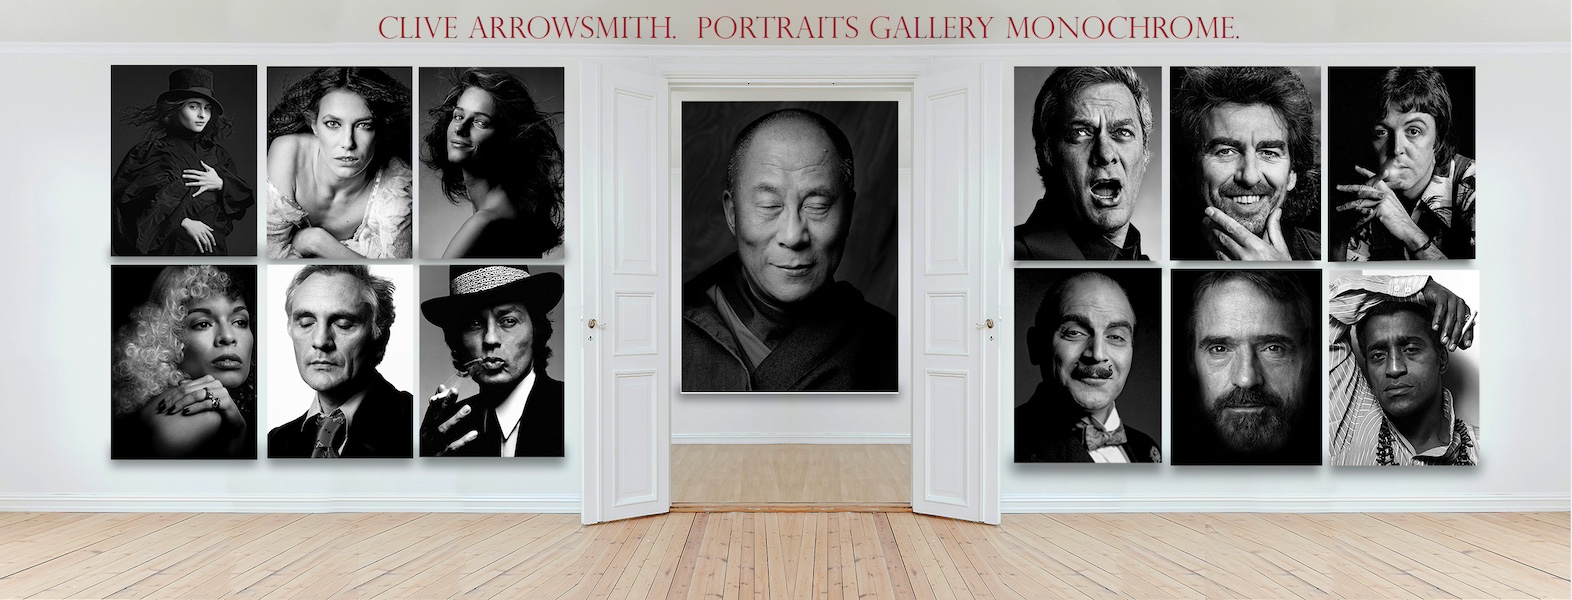 Portraits-monachrome-Clive-Arrowsmith©Maison-Sensey-Photographie